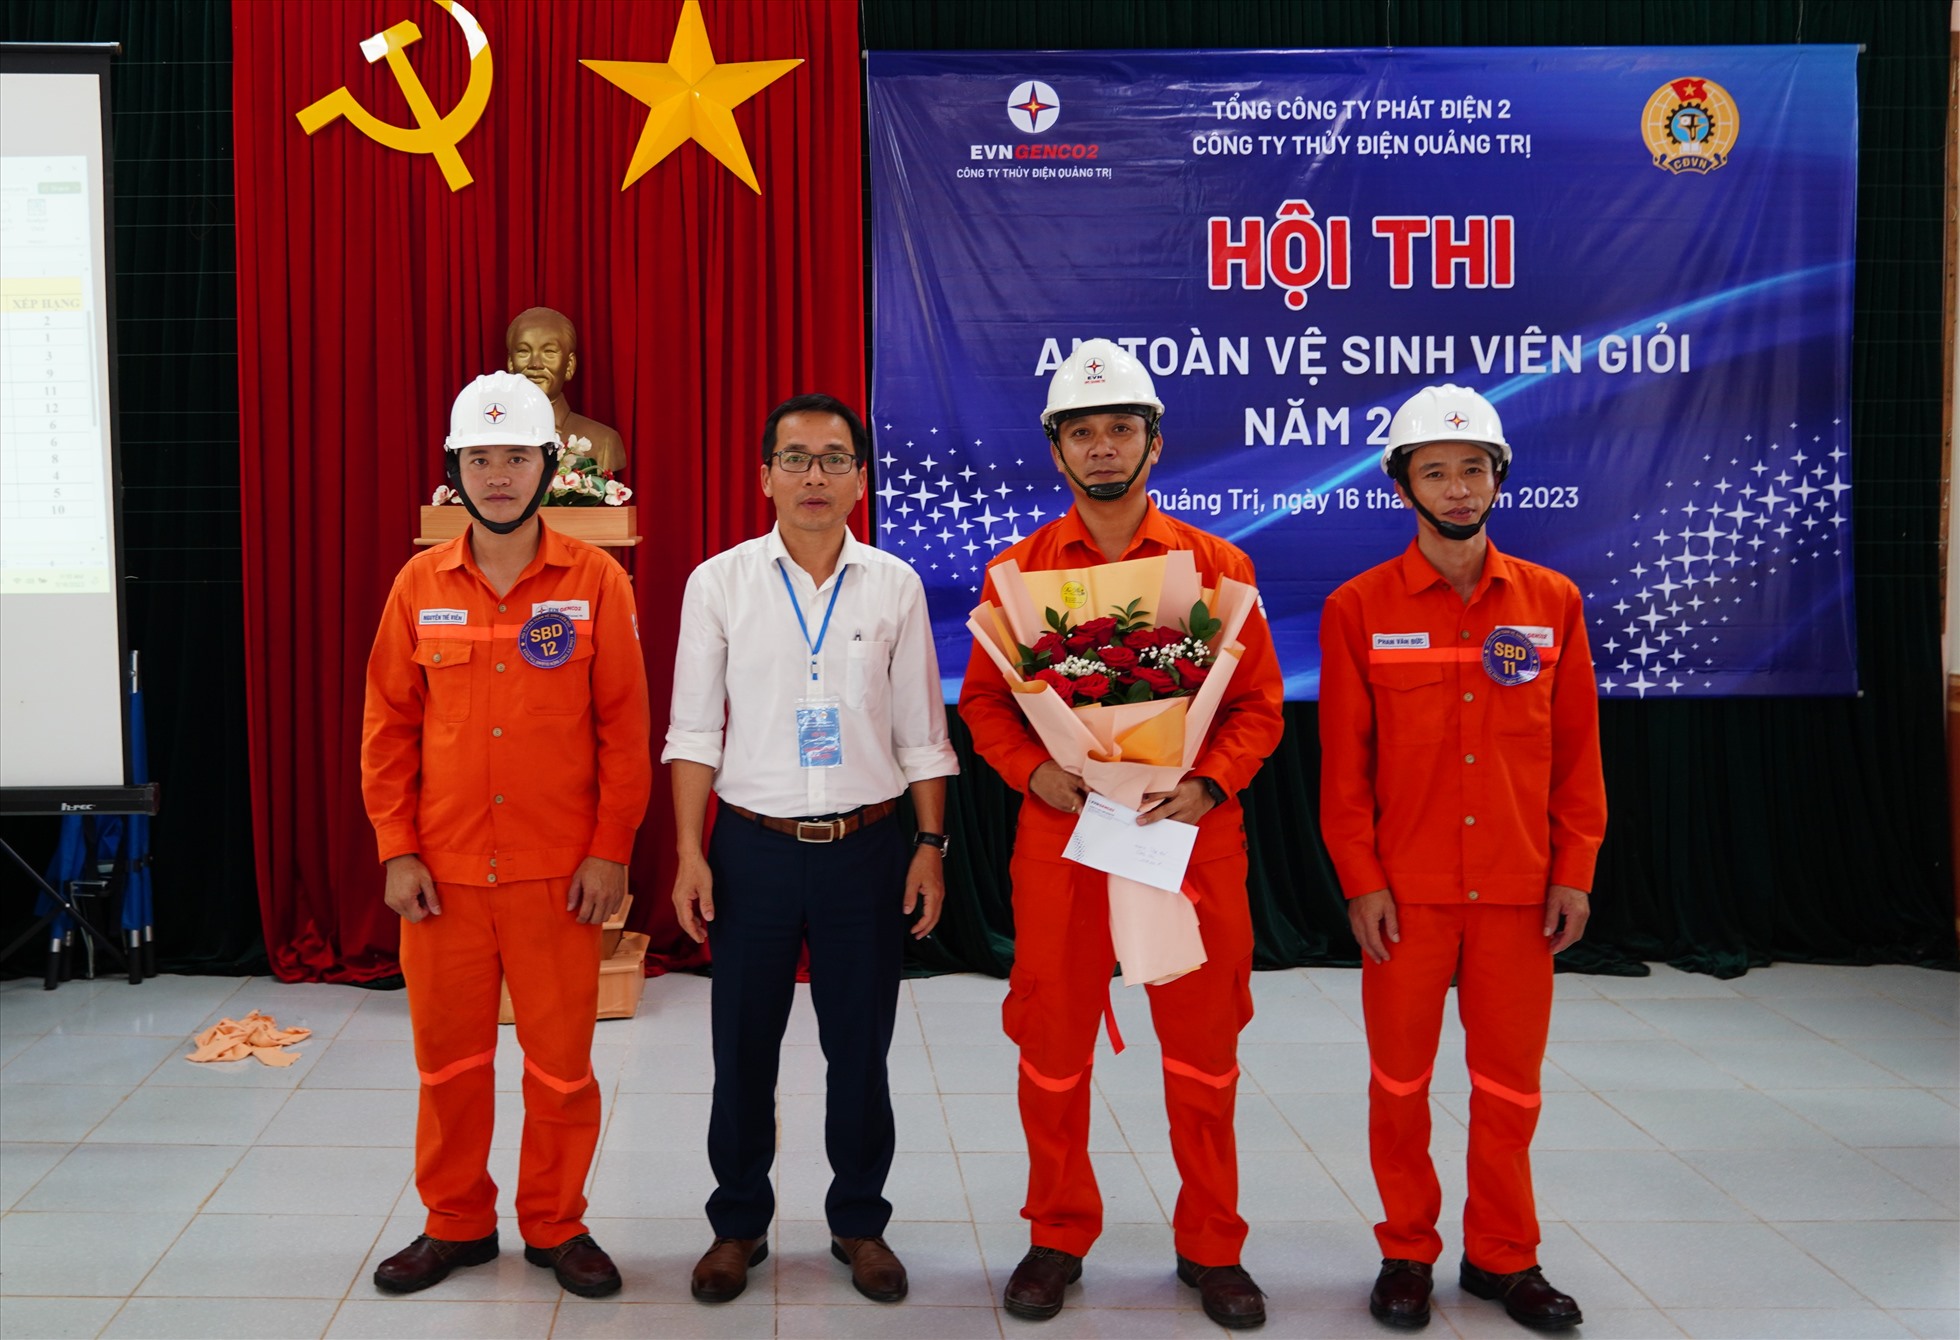 Ông Đoàn Thanh Điểm - Phó Giám đốc, Chủ tịch Công đoàn Công ty Thủy điện Quảng Trị trao giải cho đội có thành tích tại hội thi. Ảnh: Trang Sinh.